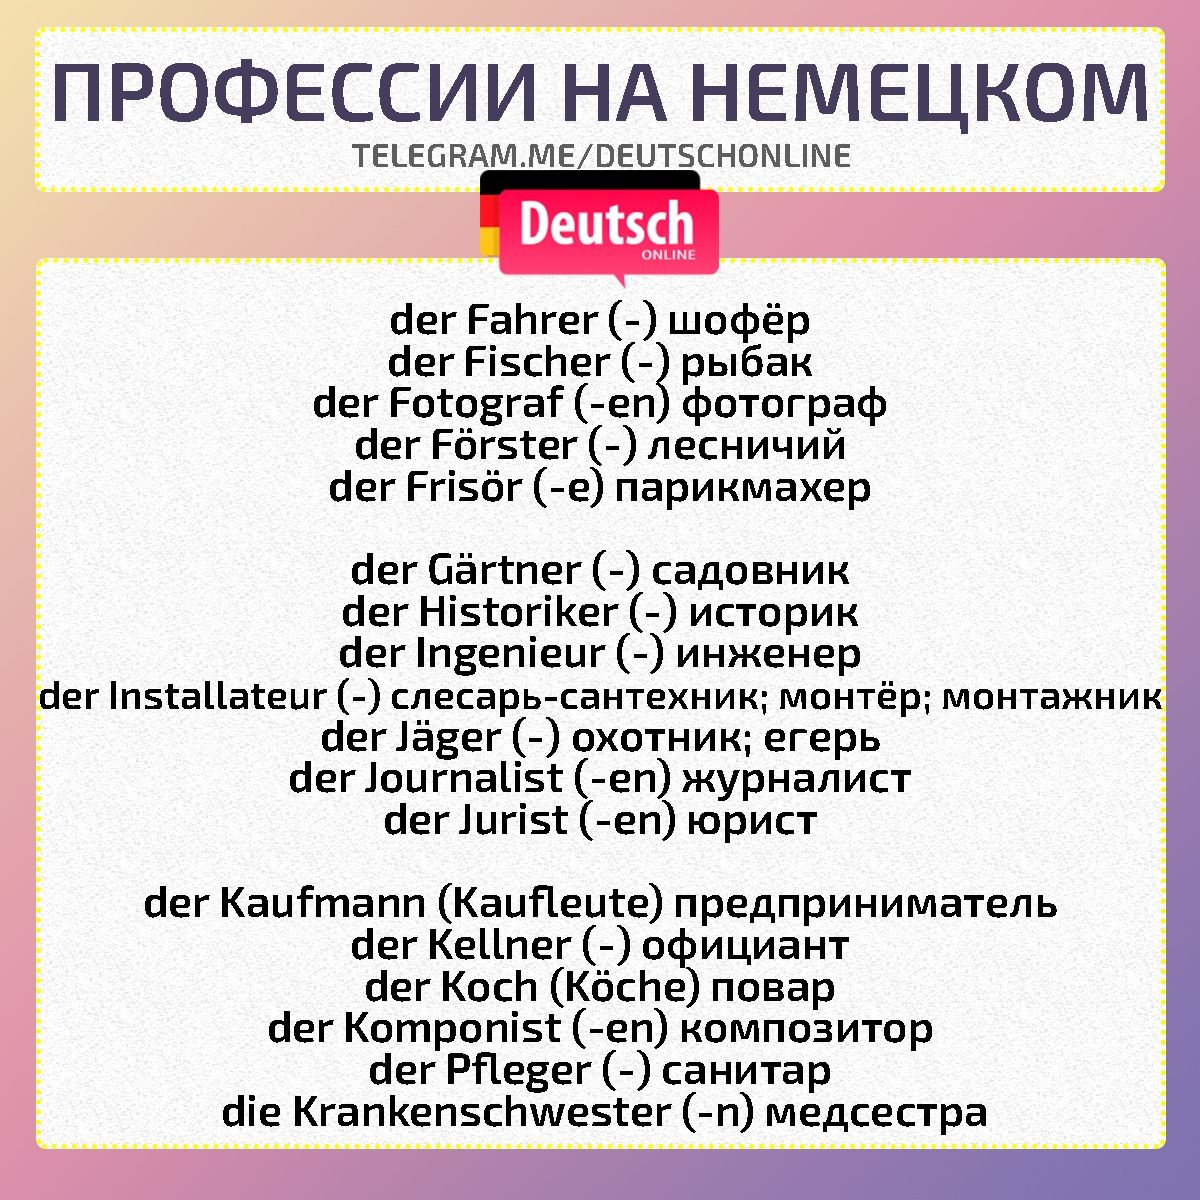 Профессии на немецком языке